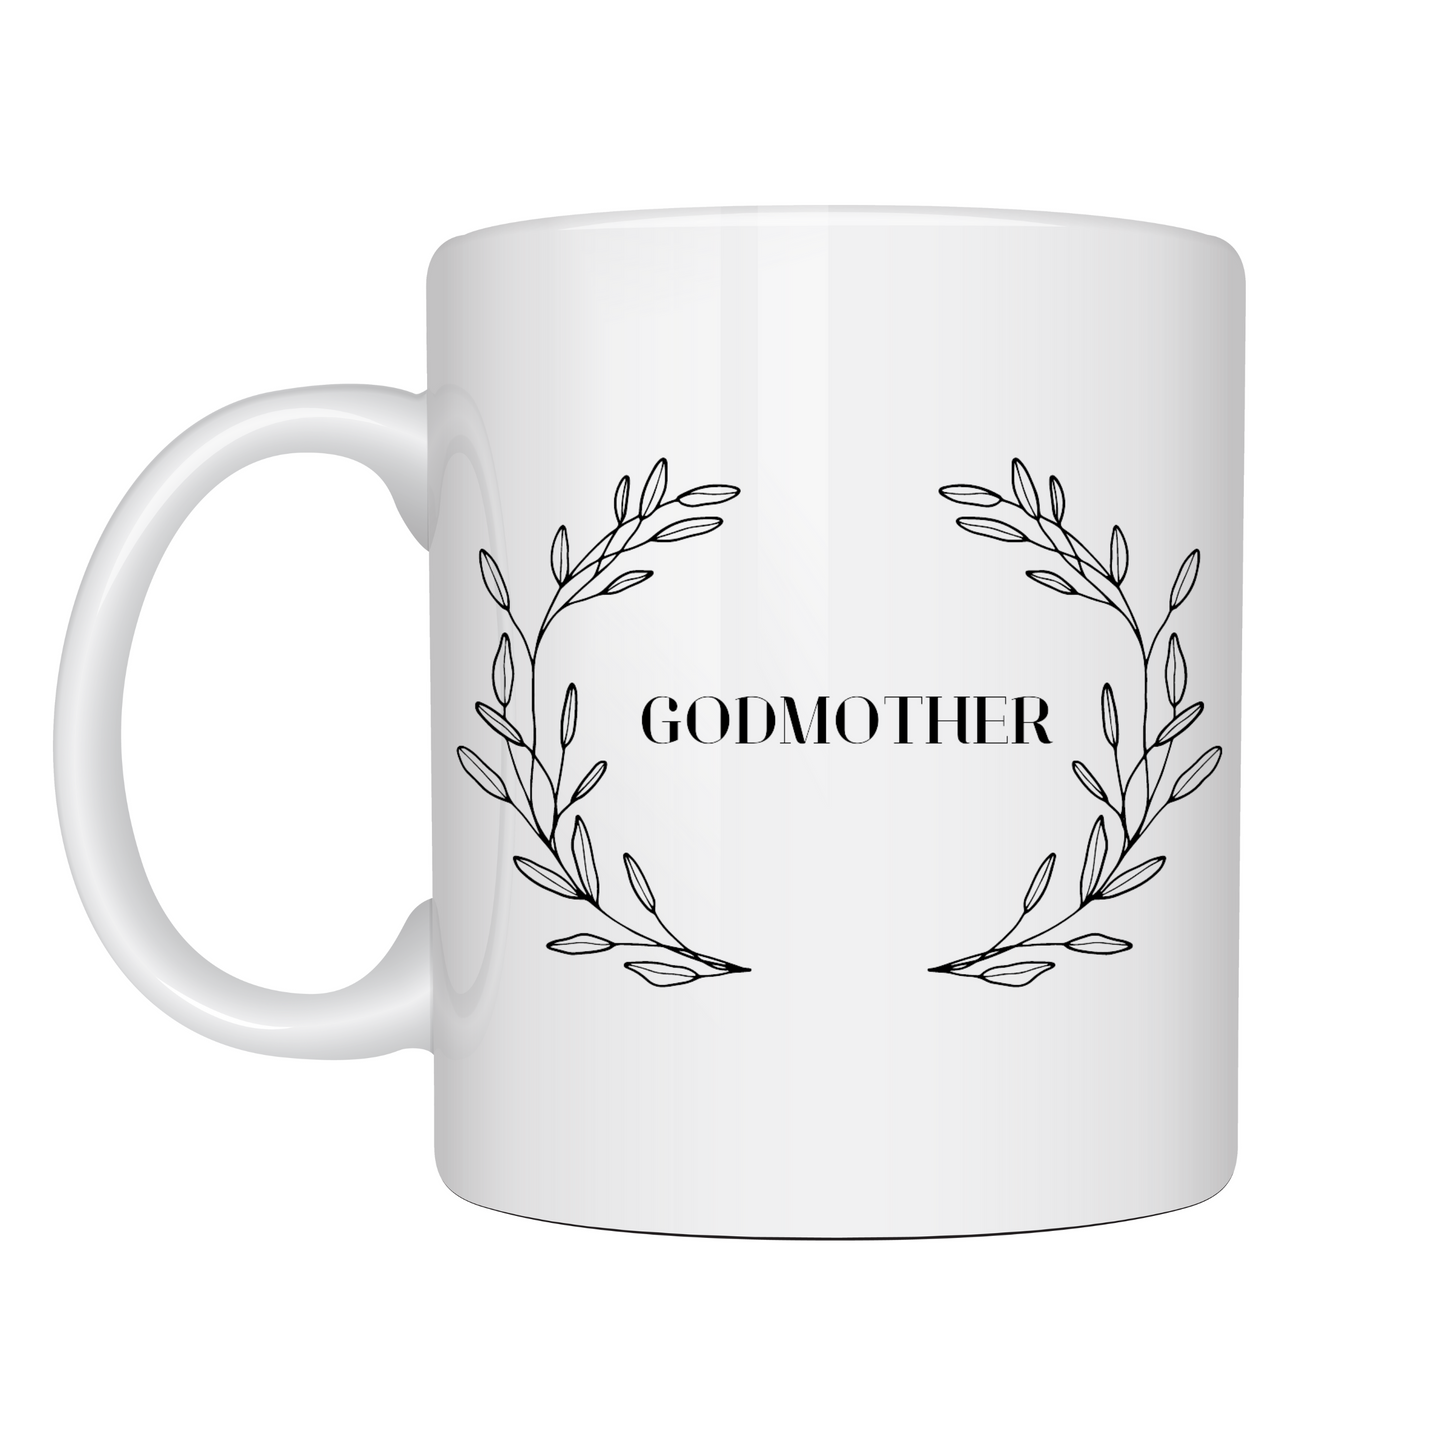 Godmother/Godfather Mugs